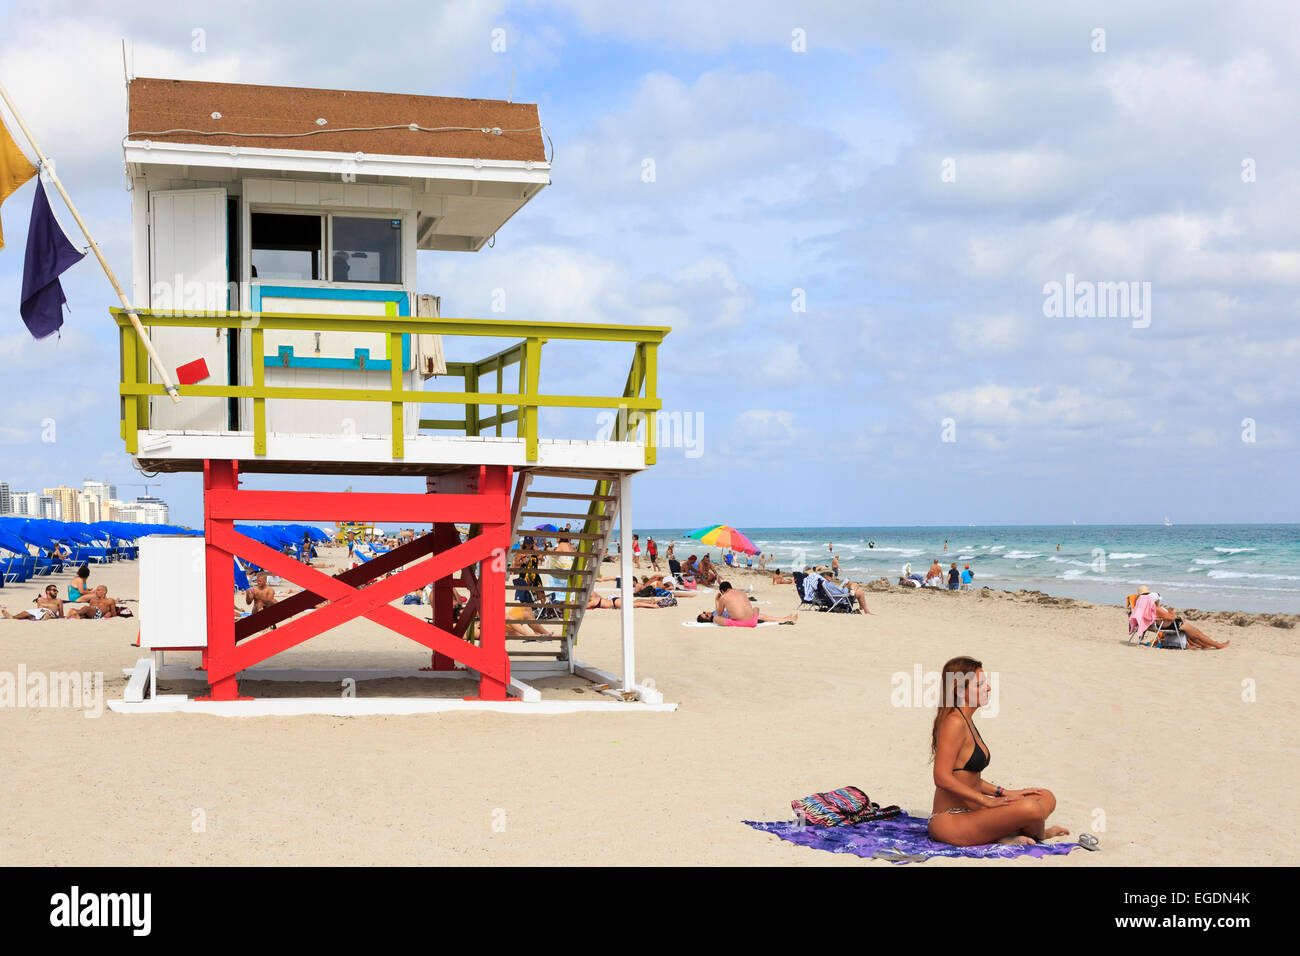 Miami South Beach, Ocean View, mit dem Pazifischen Ozean und hölzernen Rettungsschwimmer Unterschlupf, Miami, Florida, USA Stockfoto